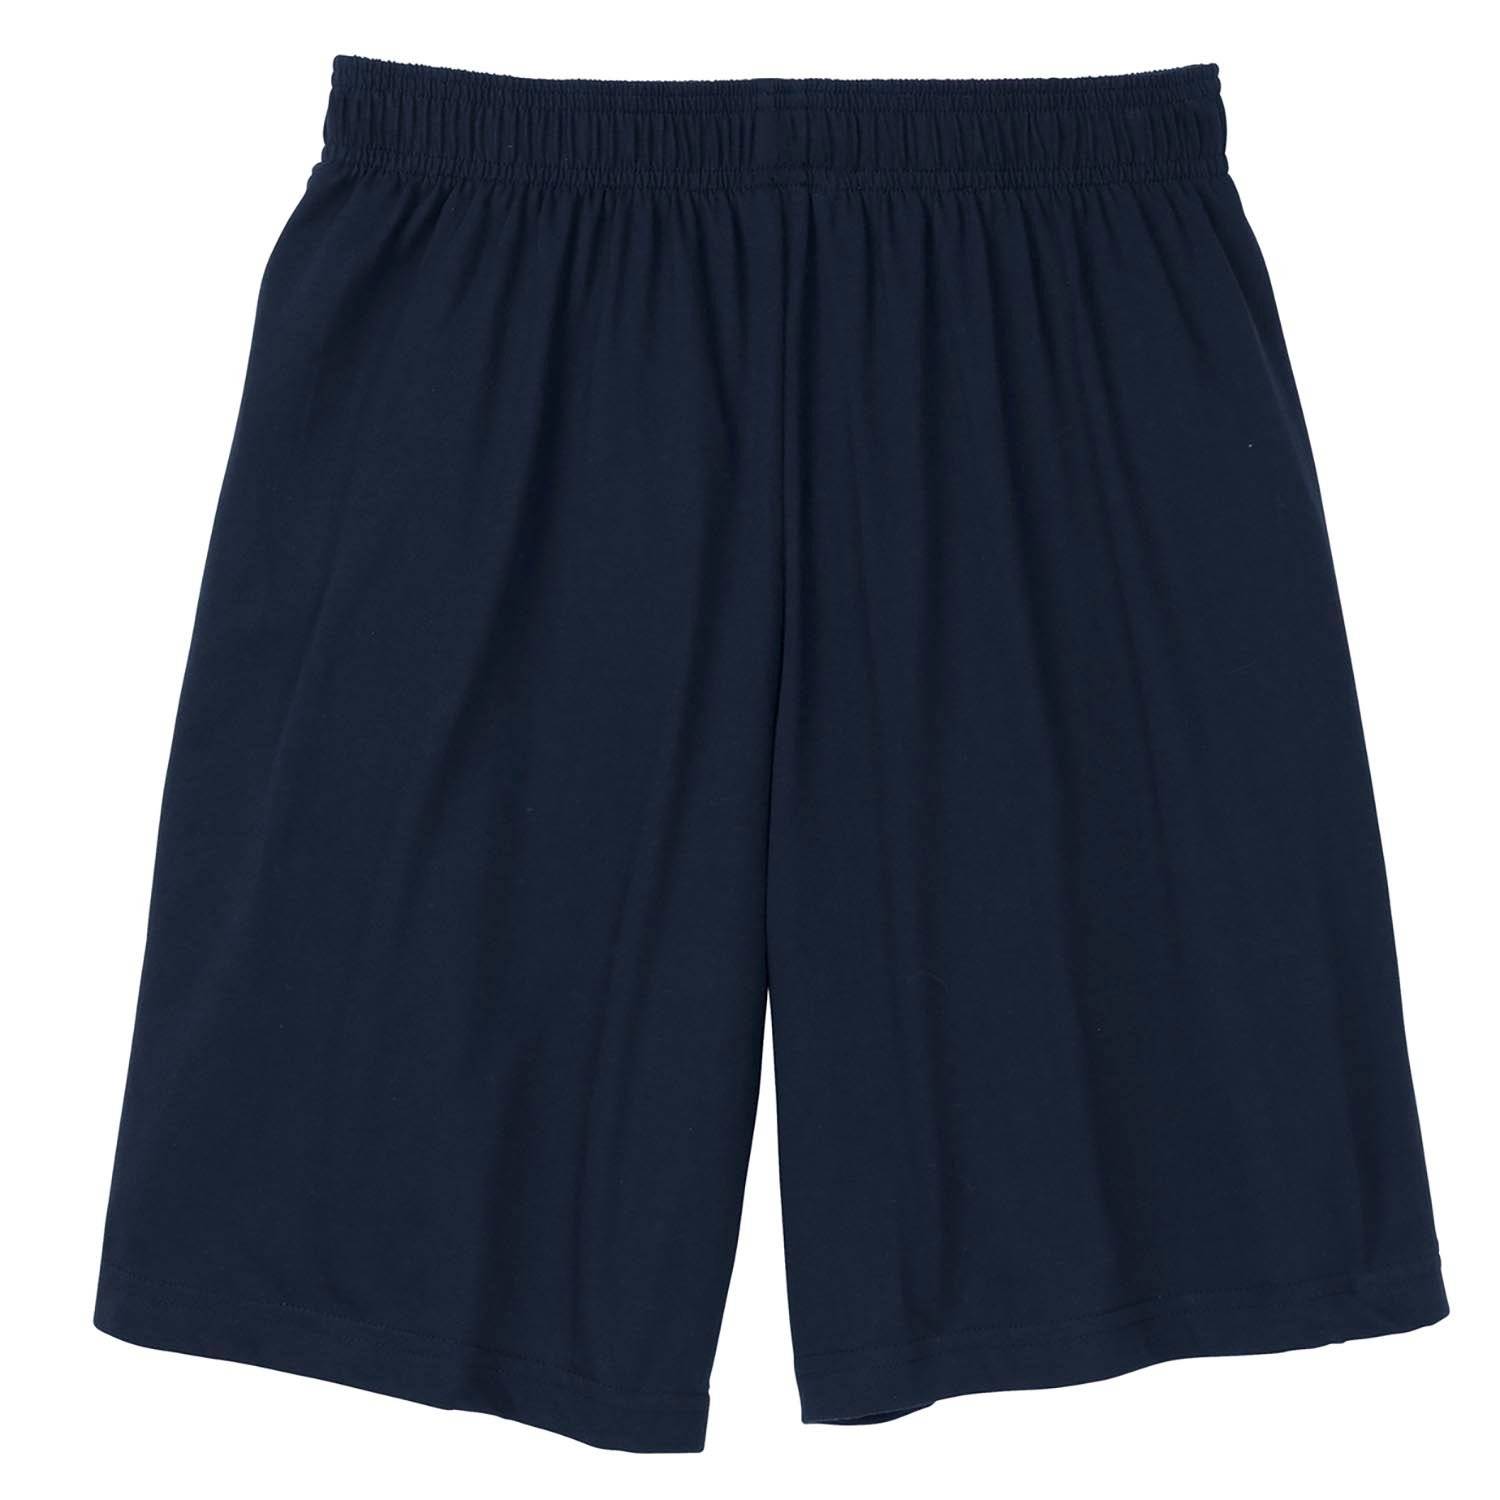 Sport Tek Jersey Knit Shorts with Pockets